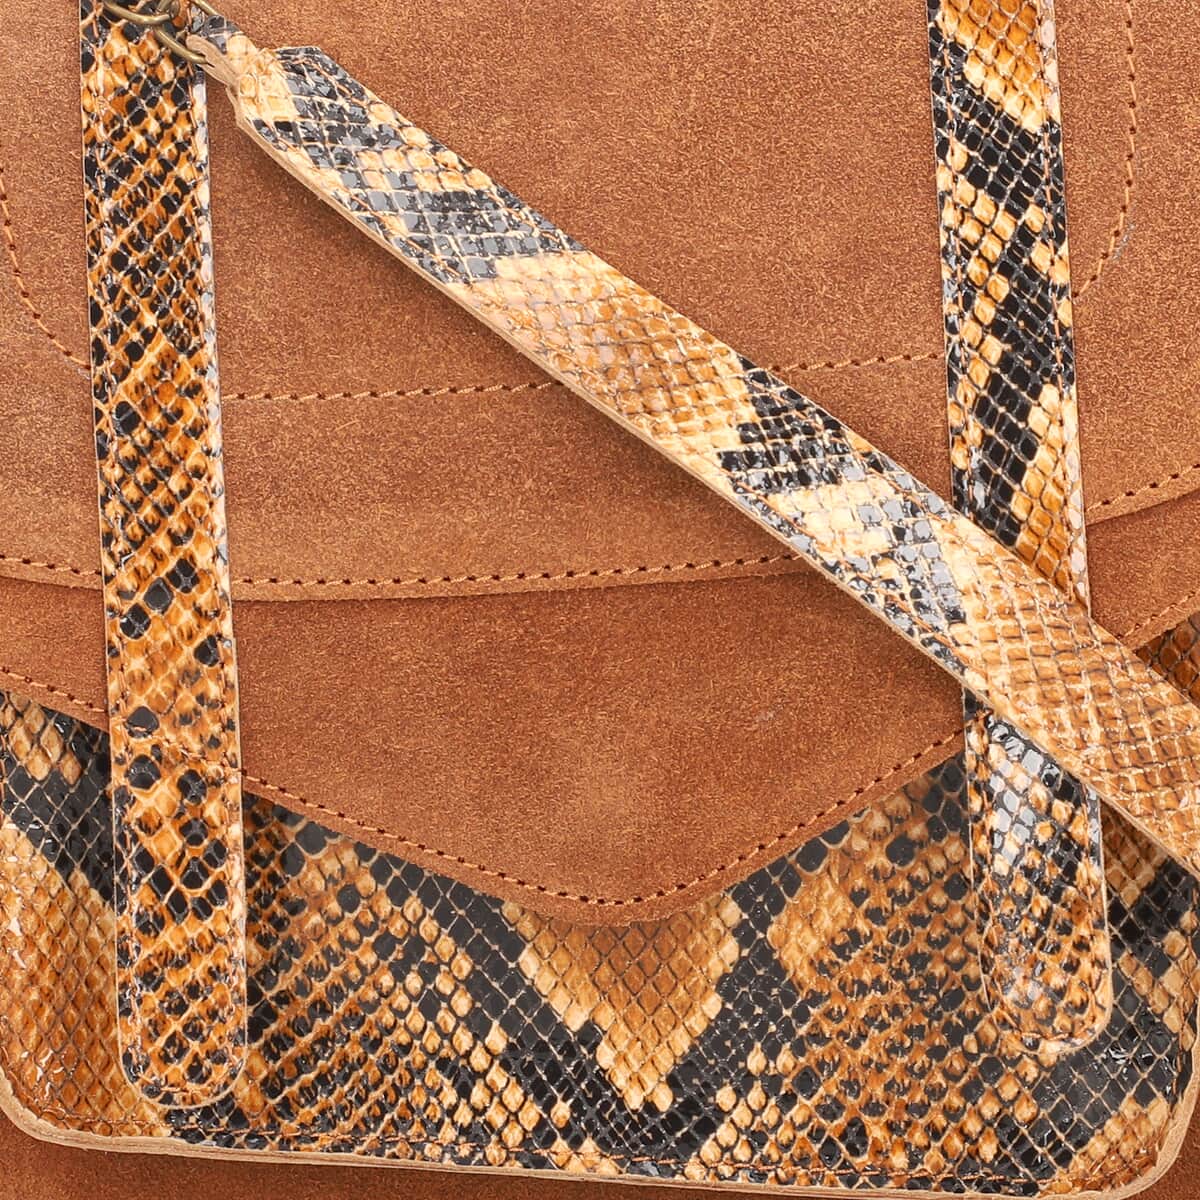 Black & Brown Snake Foil Print Genuine Leather Shoulder Bag (9"x3"x8") with Shoulder Strap & Handle Drops image number 6